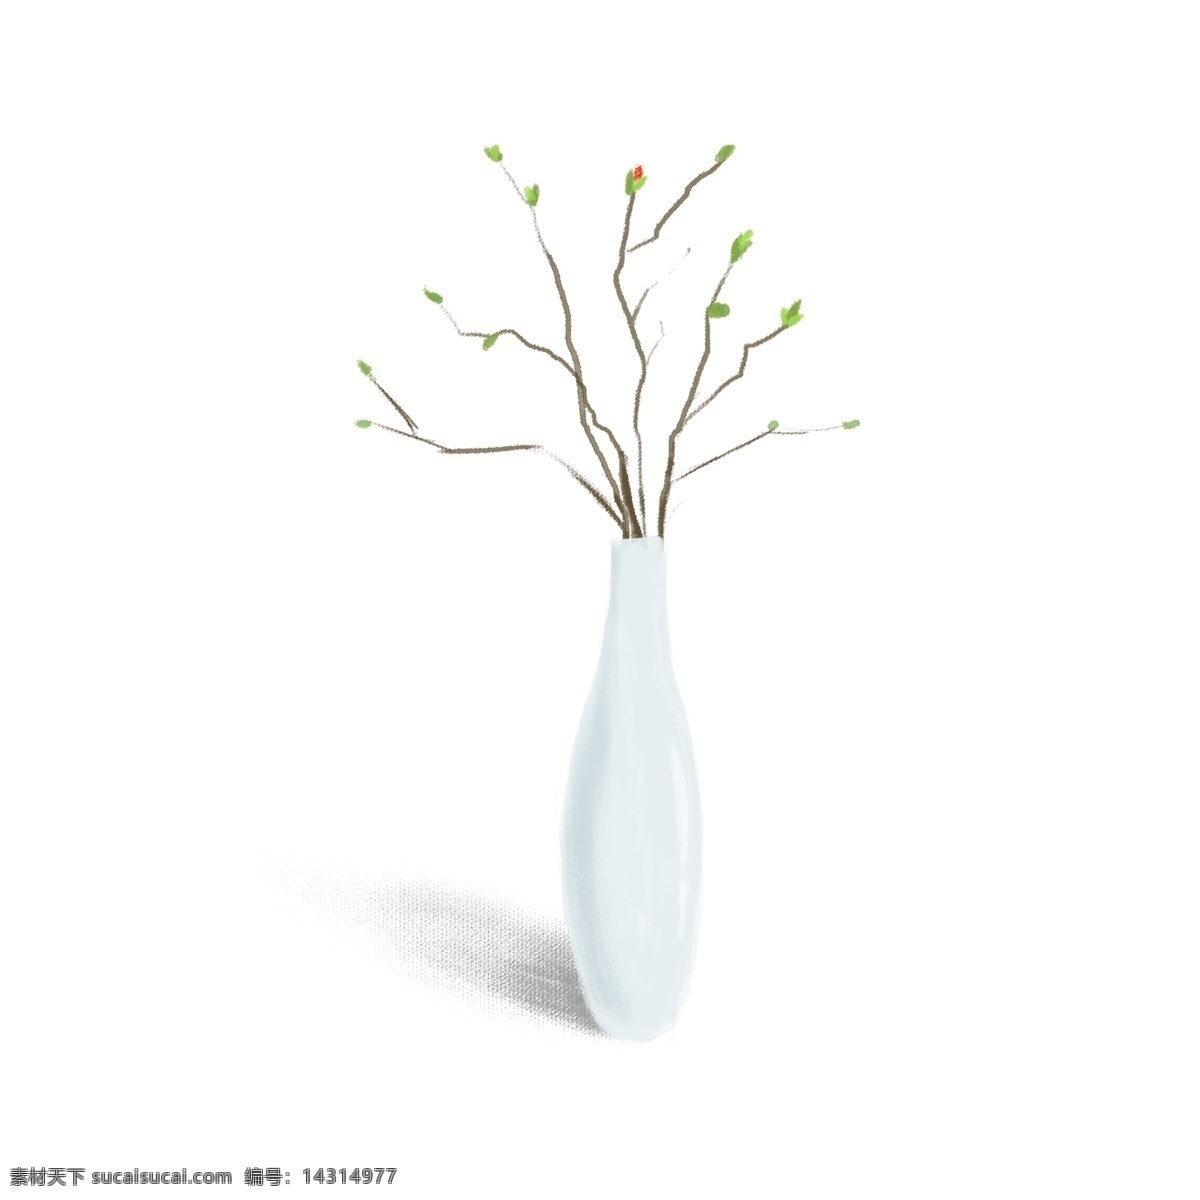 原创 手绘 白色 花瓶 花卉 插画 商用 树枝 叶子 白色花瓶 商业素材